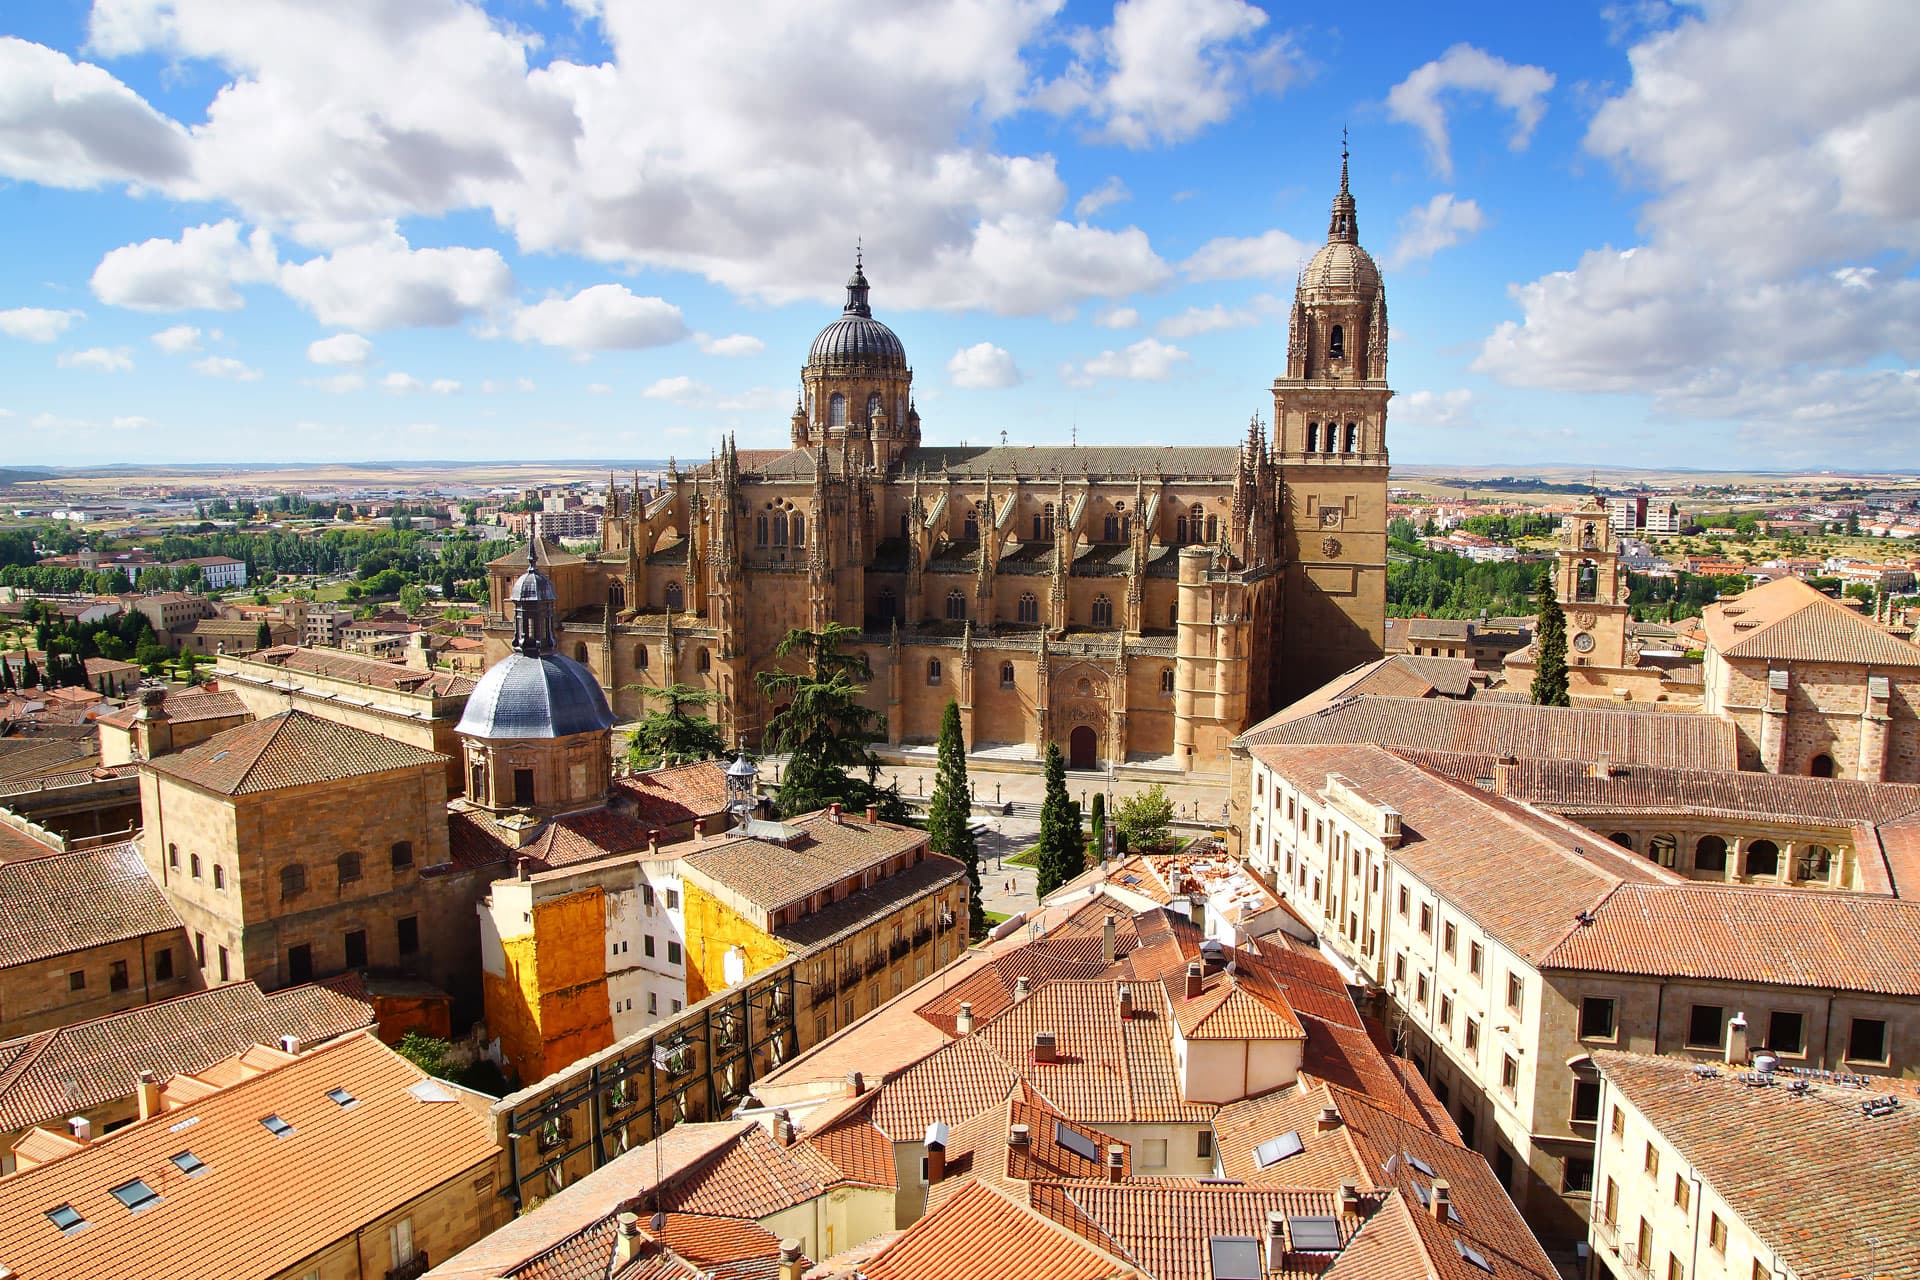 Desalojo de okupas en Salamanca